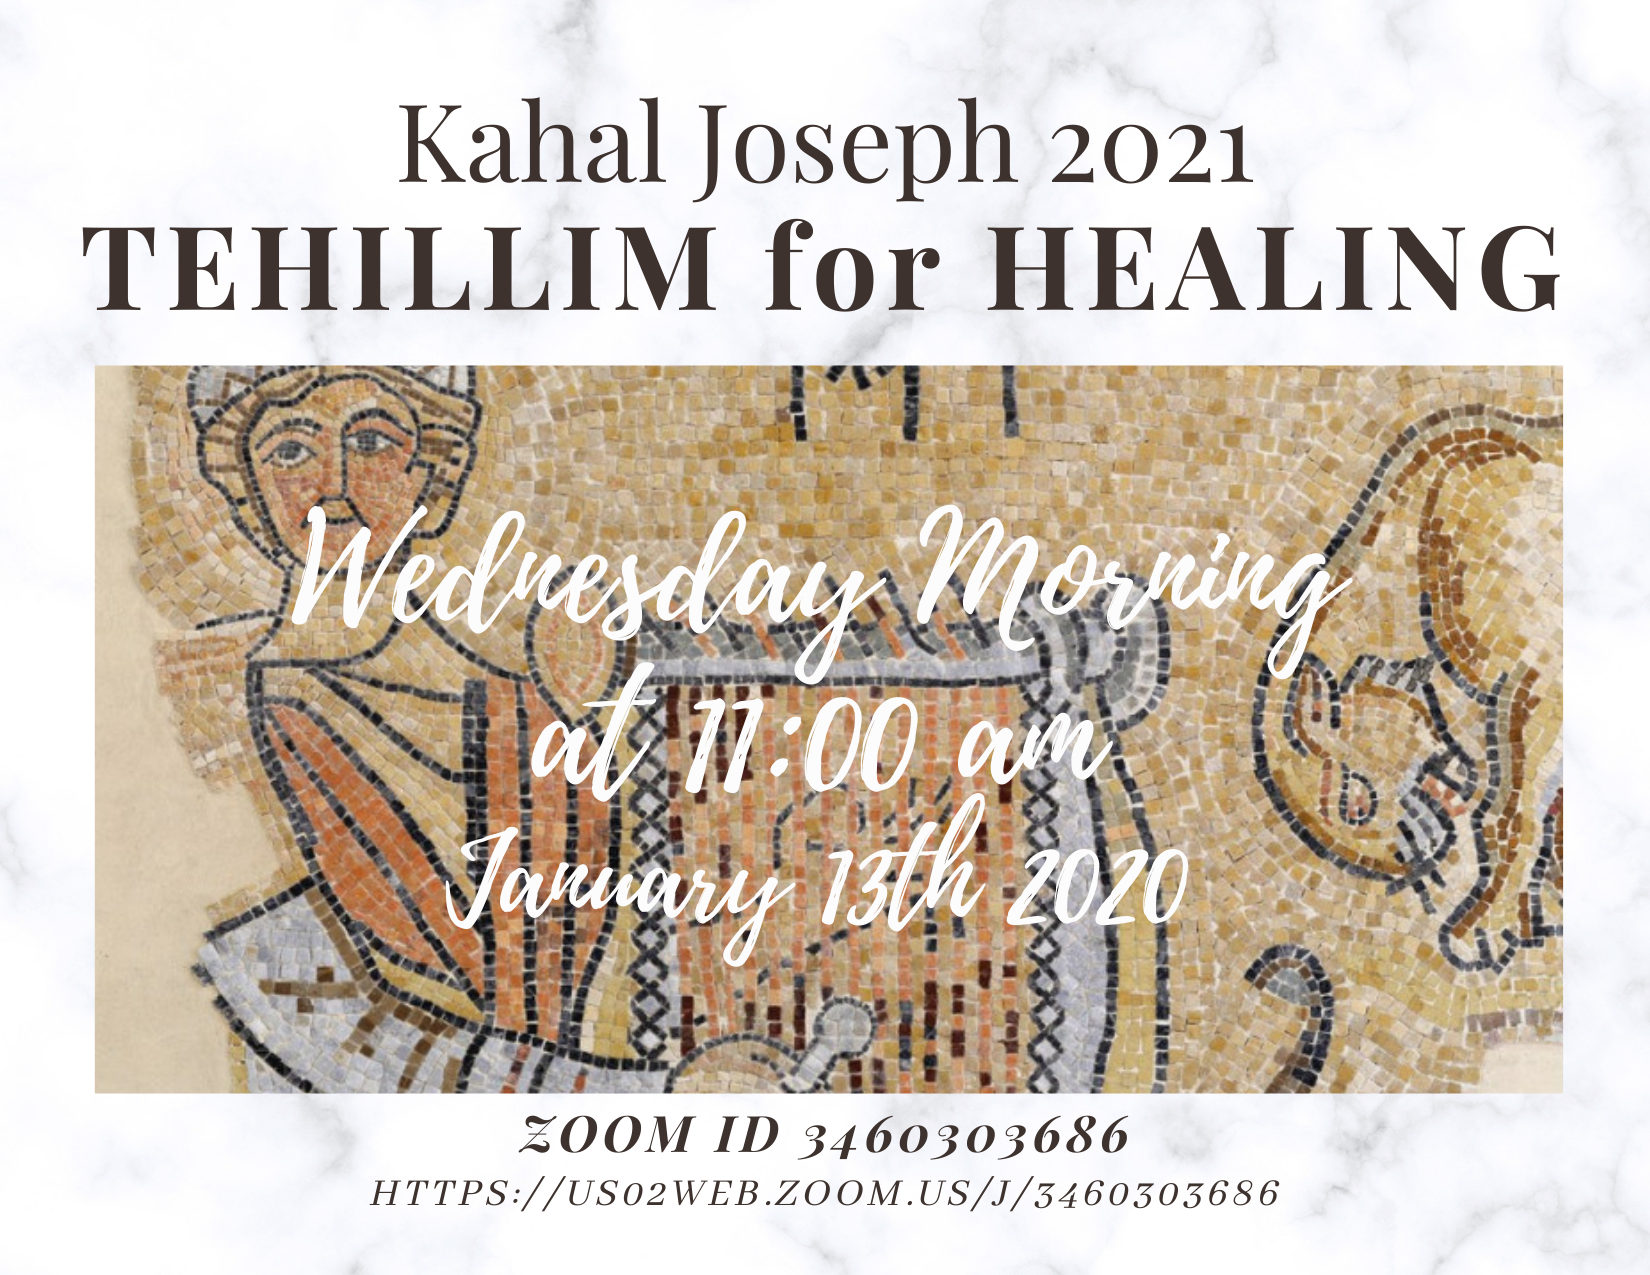 Tehillim for Healing